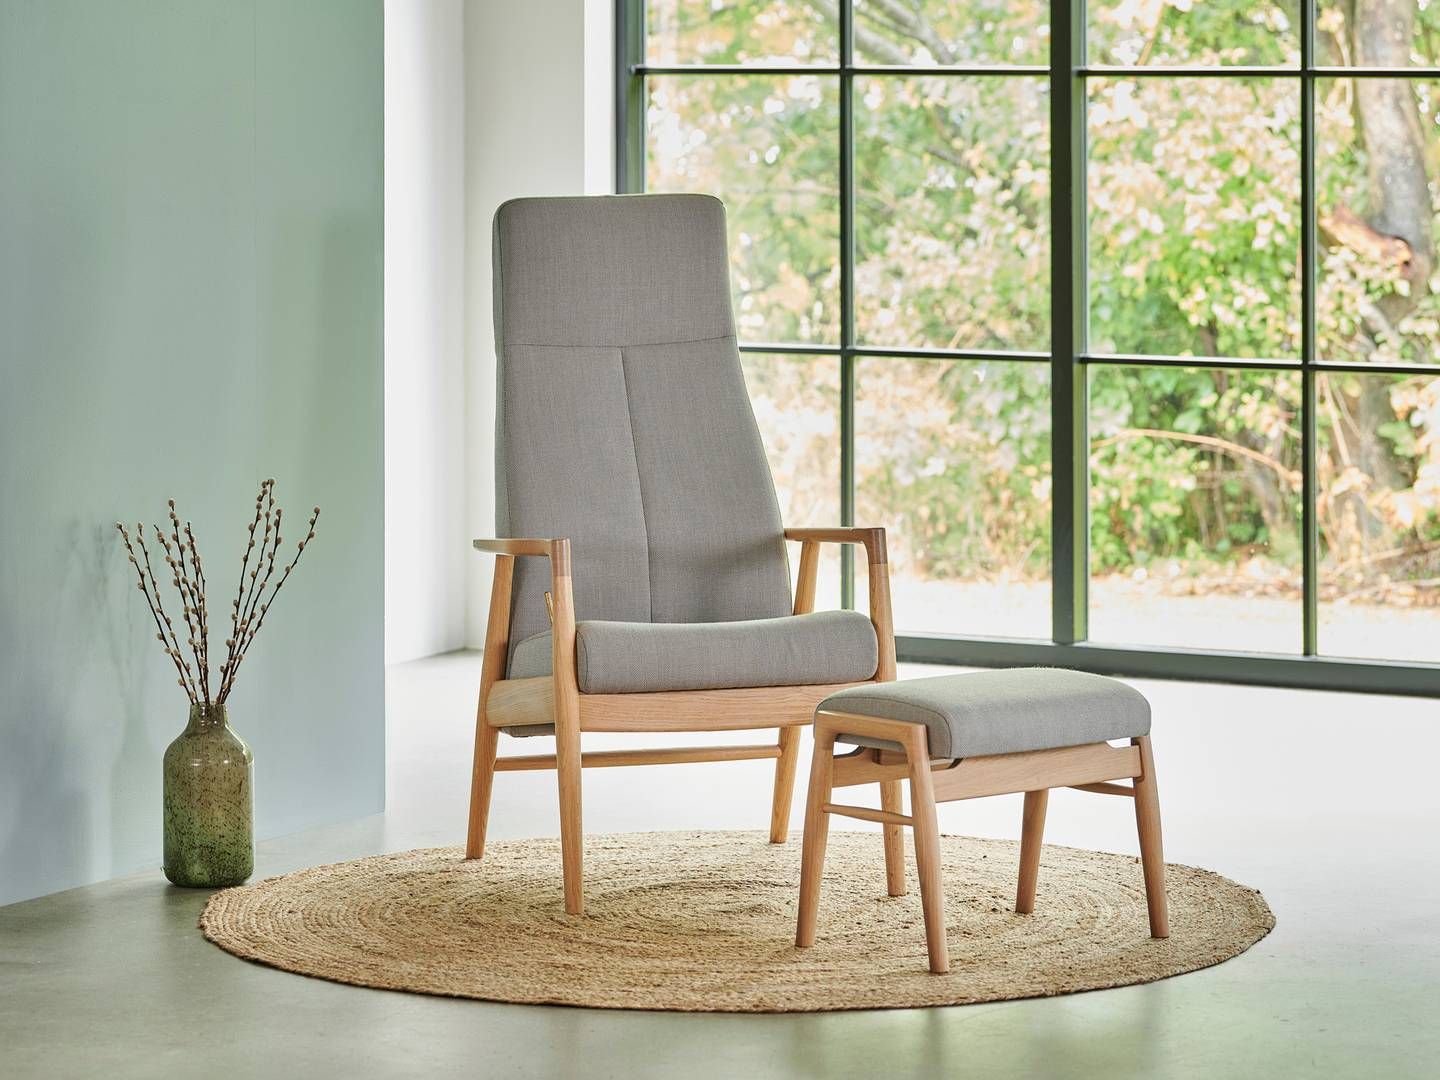 Fynske Farstrup Furniture har eksisteret siden 1910 og er især specialiseret i design og produktion af stole. | Foto: PR/Farstrup Furniture